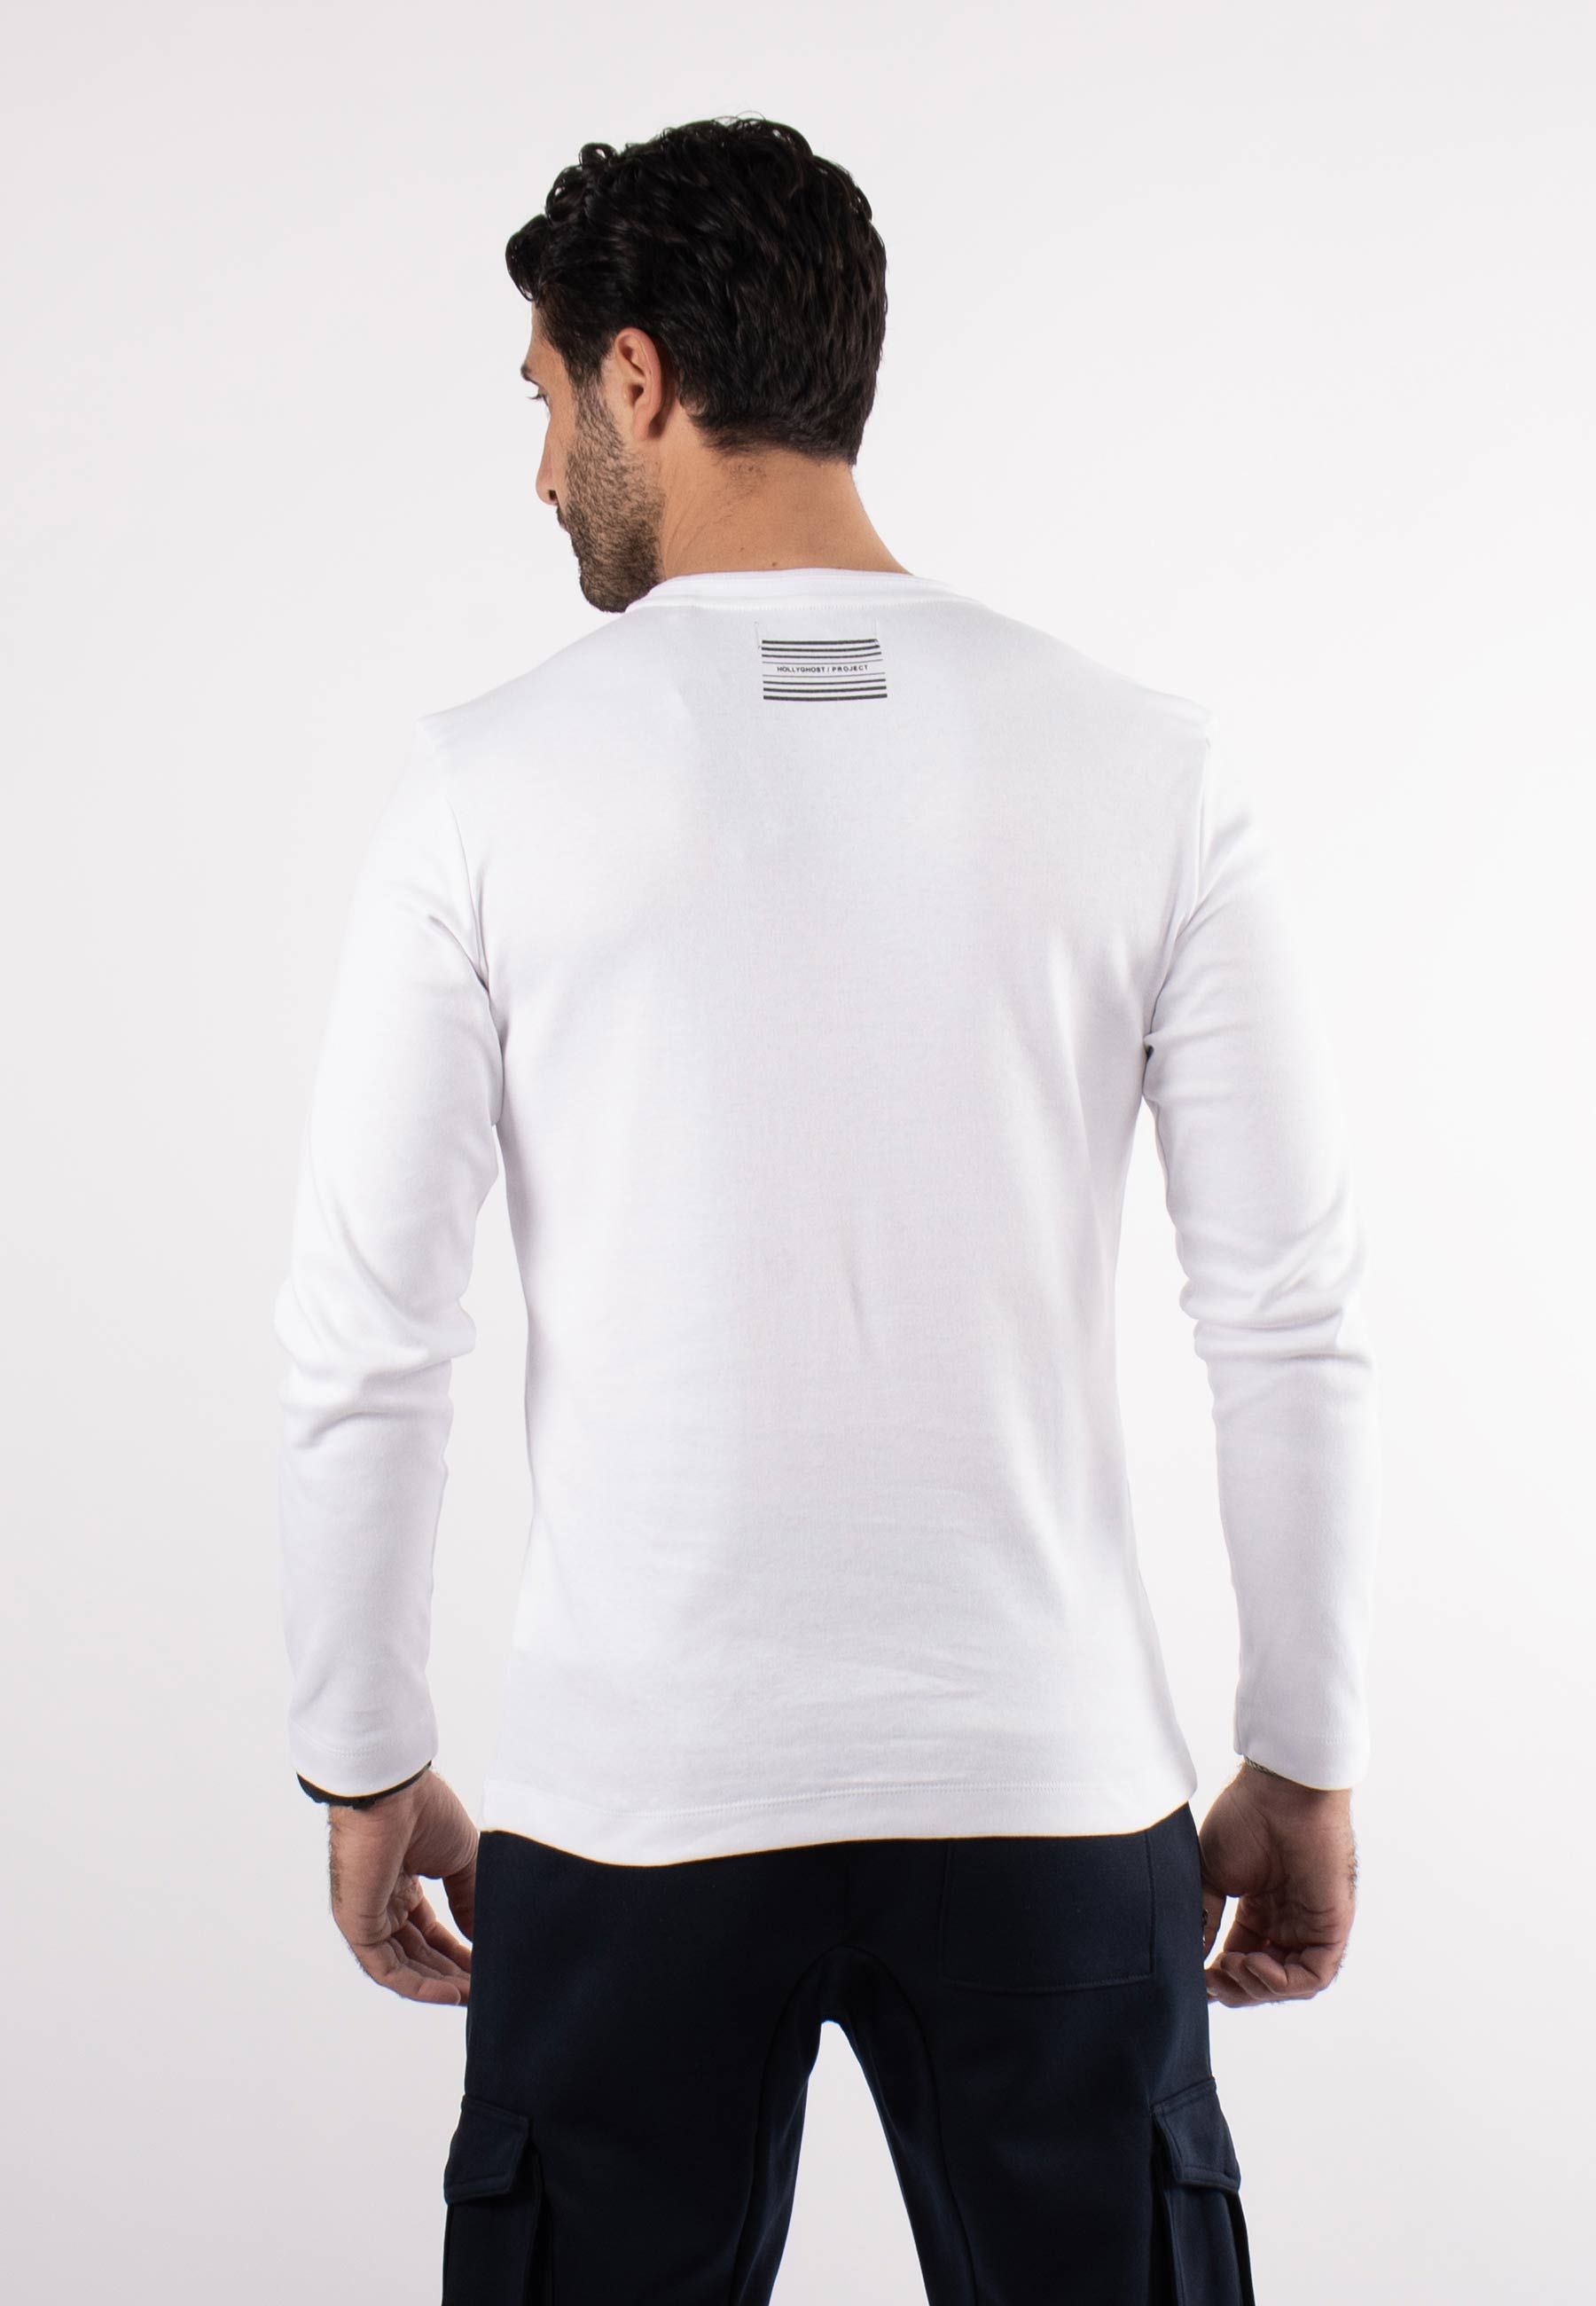 T-shirt blanc avec triangle noir sur poitrine et inscription hollyghost